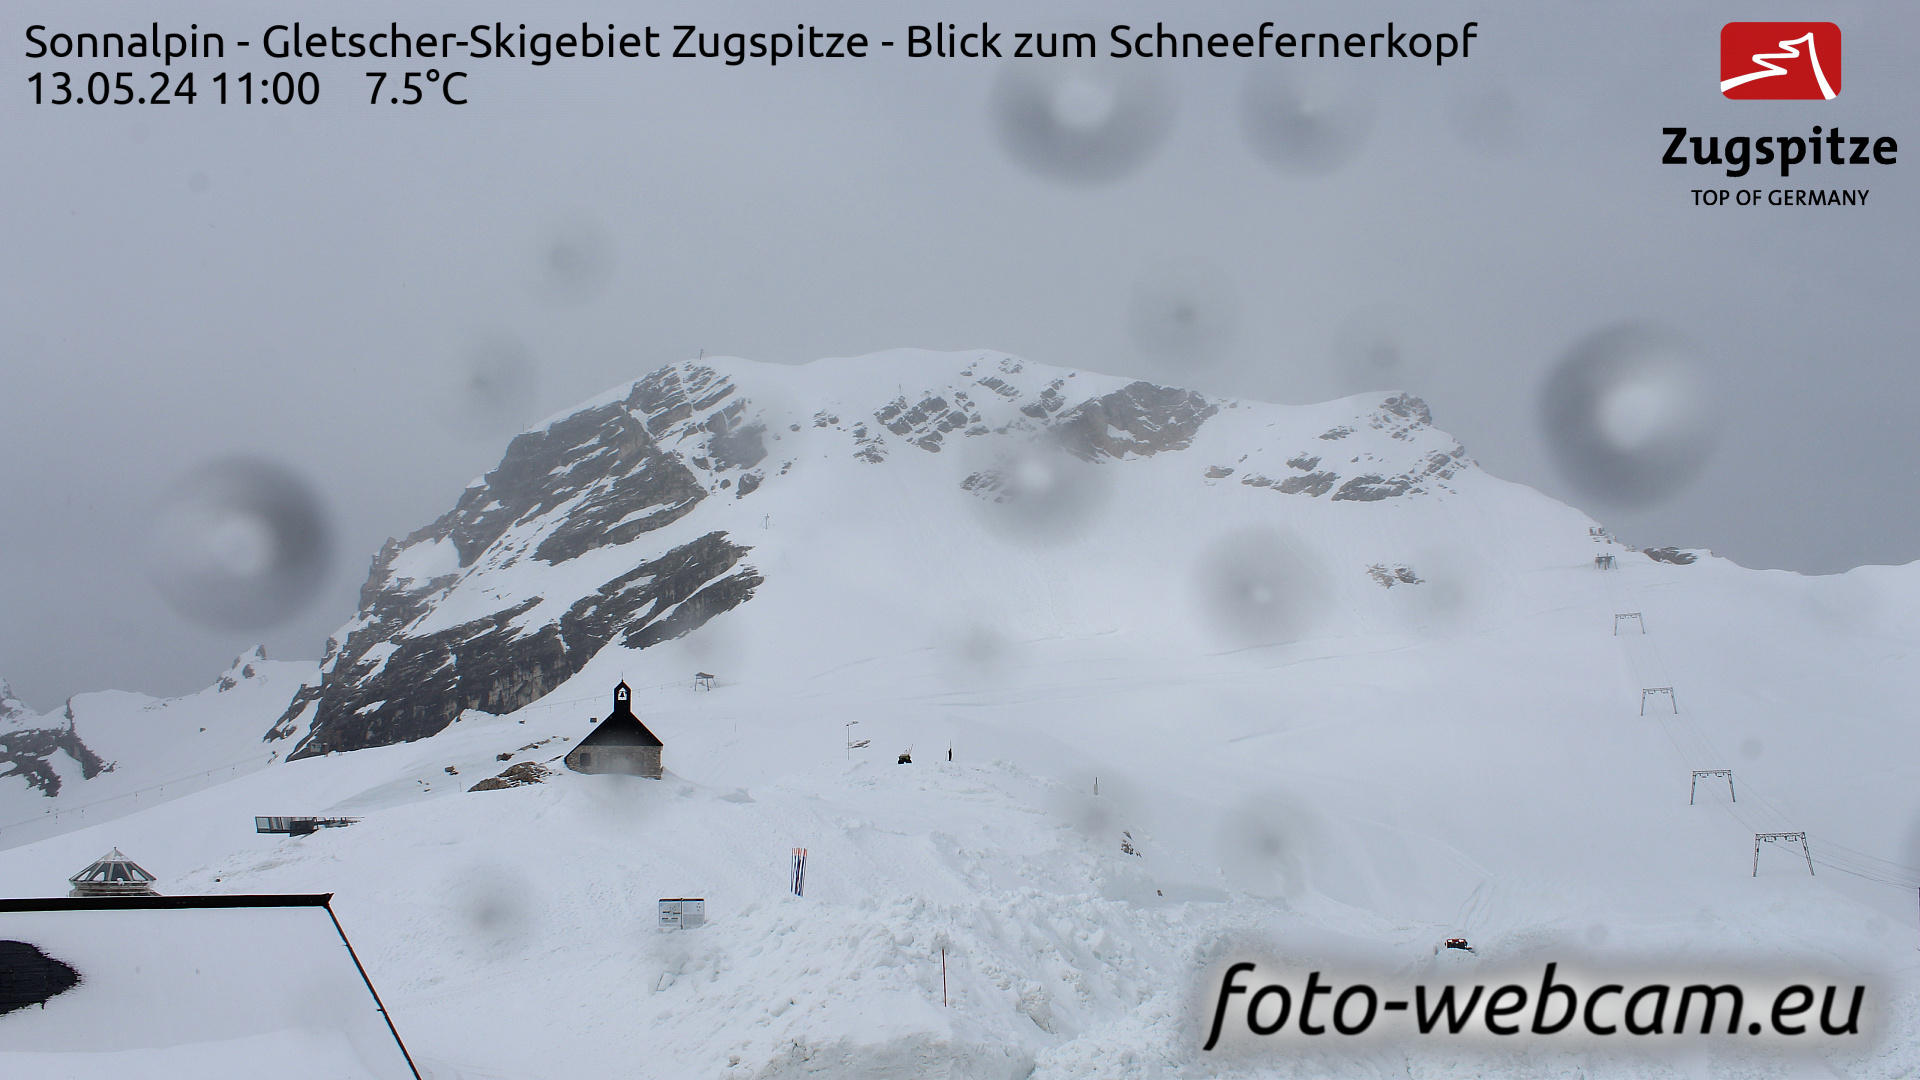 Zugspitze Wed. 11:24